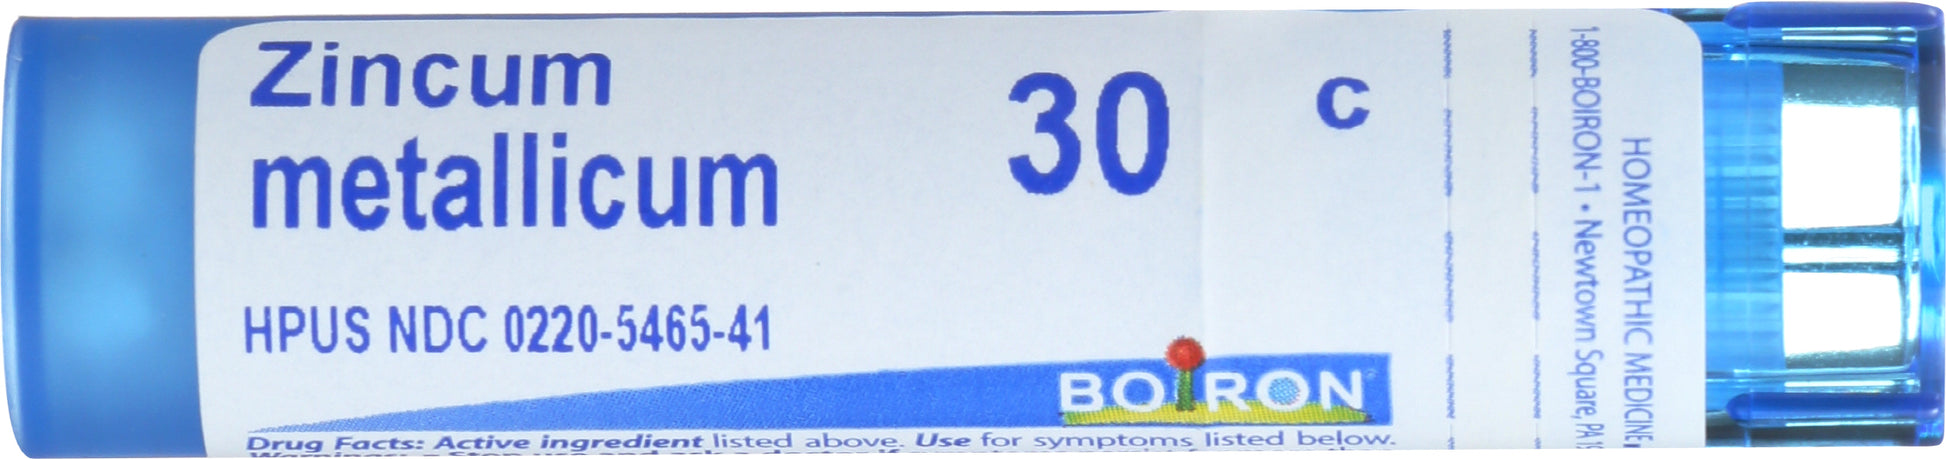 Boiron Zincum metallicum 30c